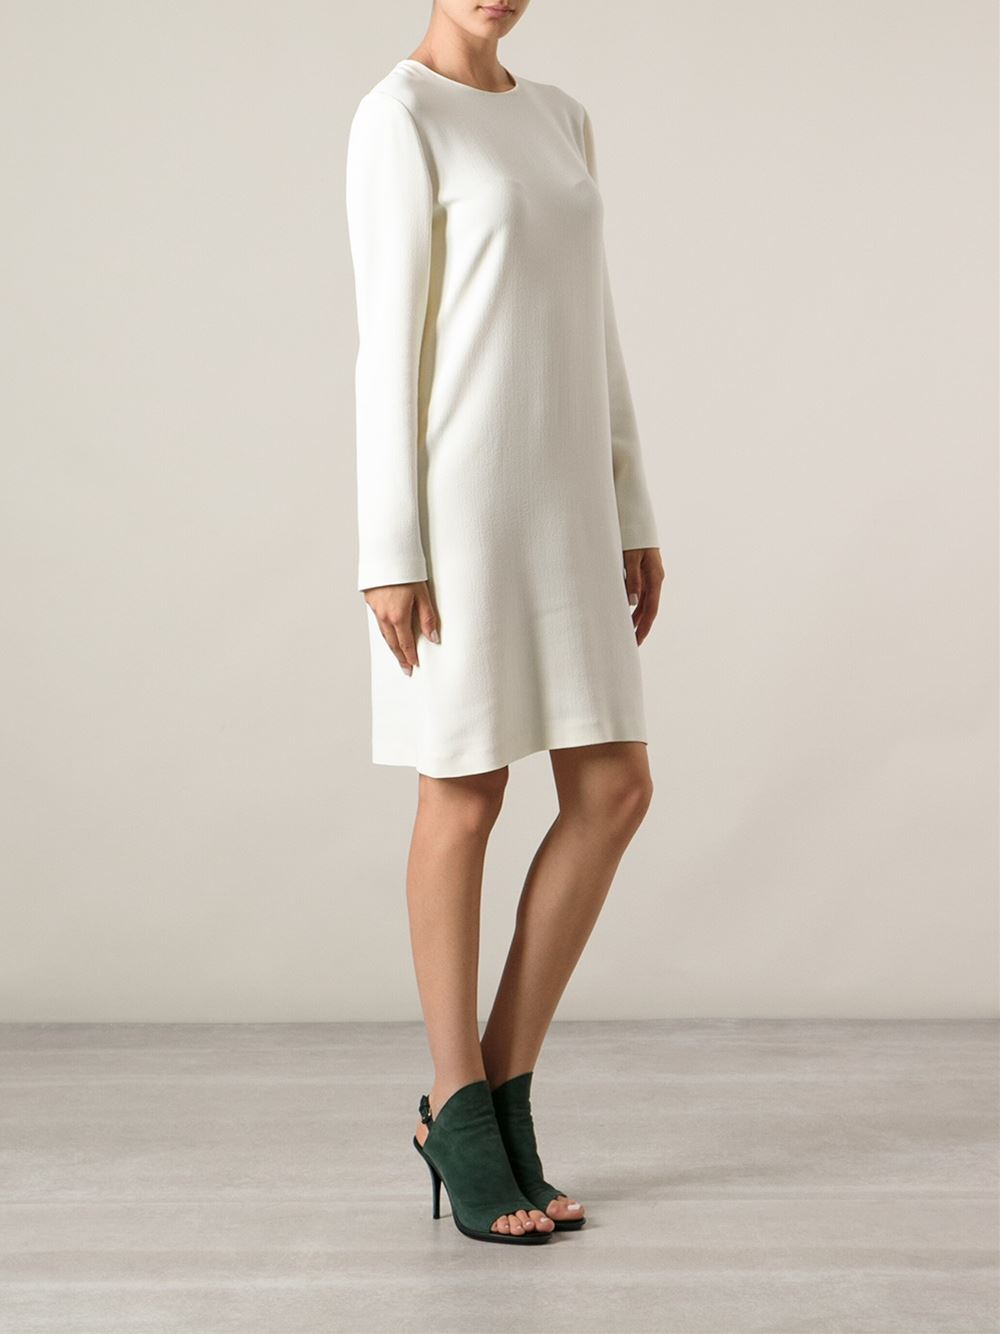 Calvin Klein Long Sleeved Dress in White - Lyst